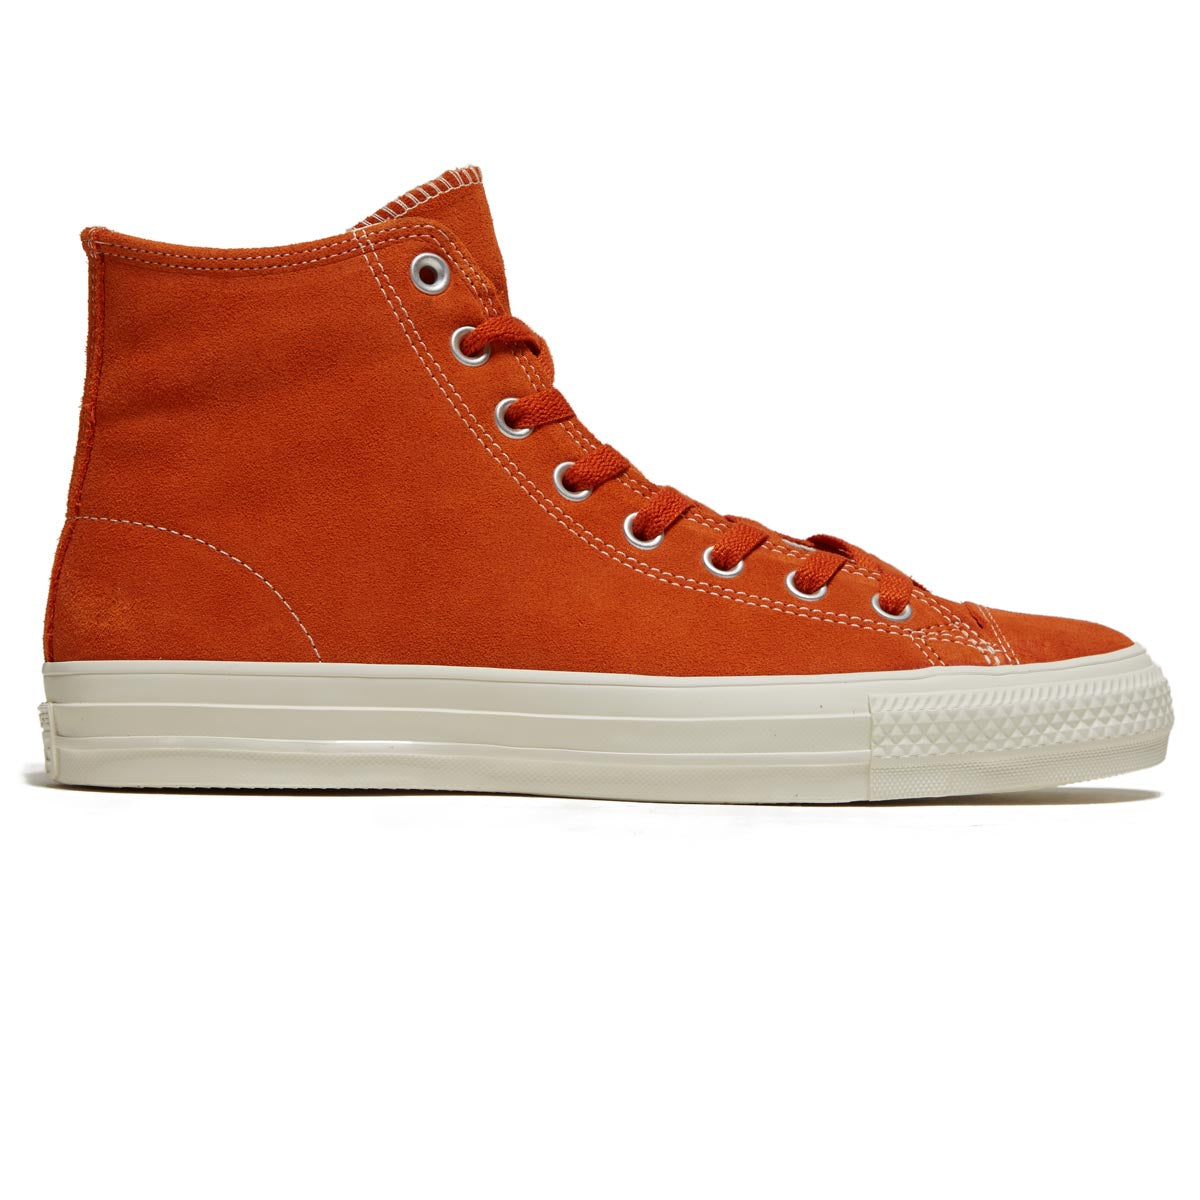 Converse Ctas Pro Hi Shoes - Campfire Orange/Egret image 1